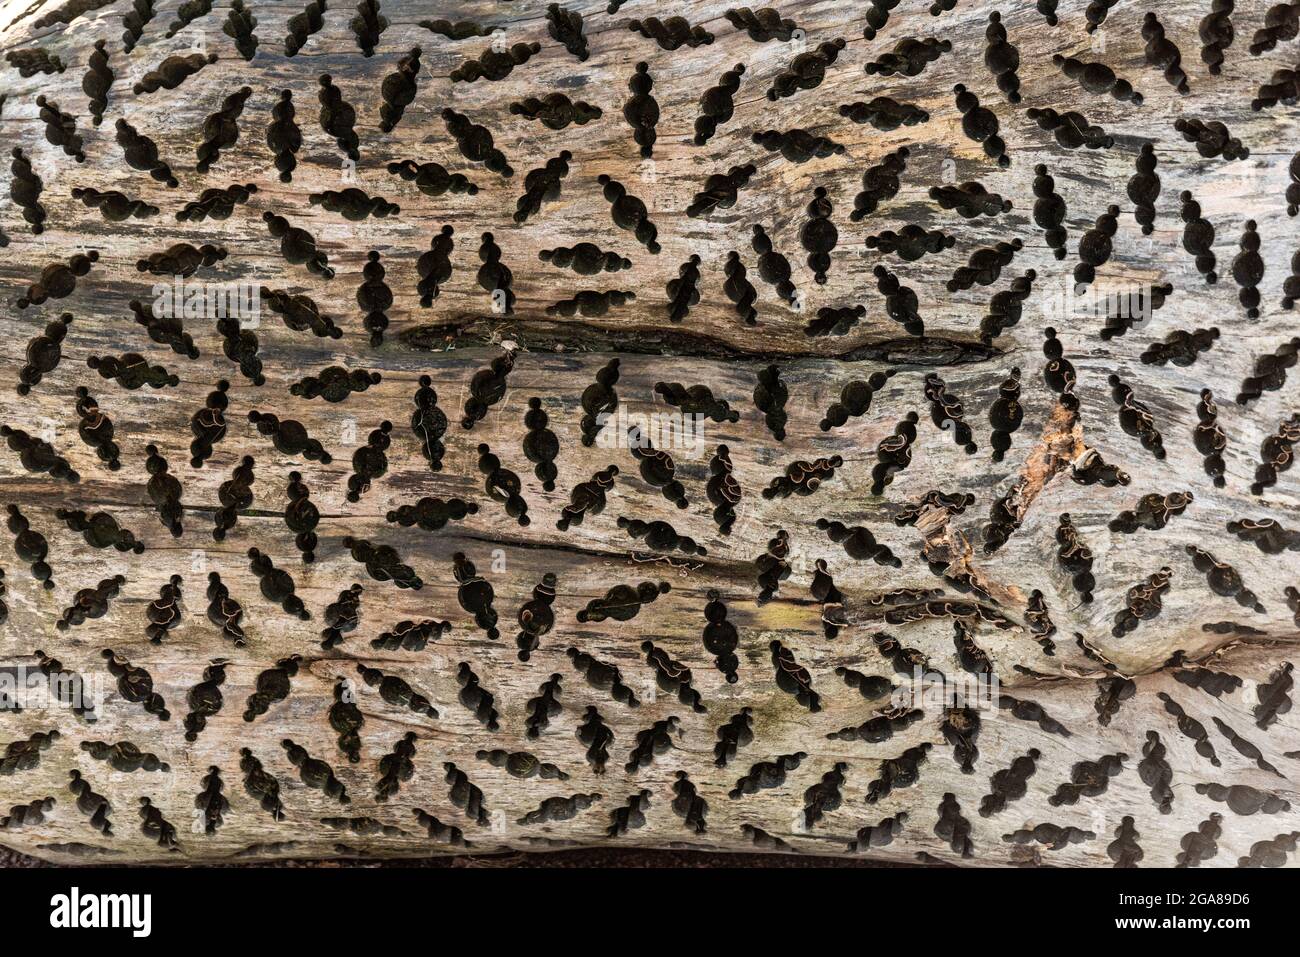 Tryptophobisches Muster, das in einen Stamm aus Holz gebohrt wurde Stockfoto